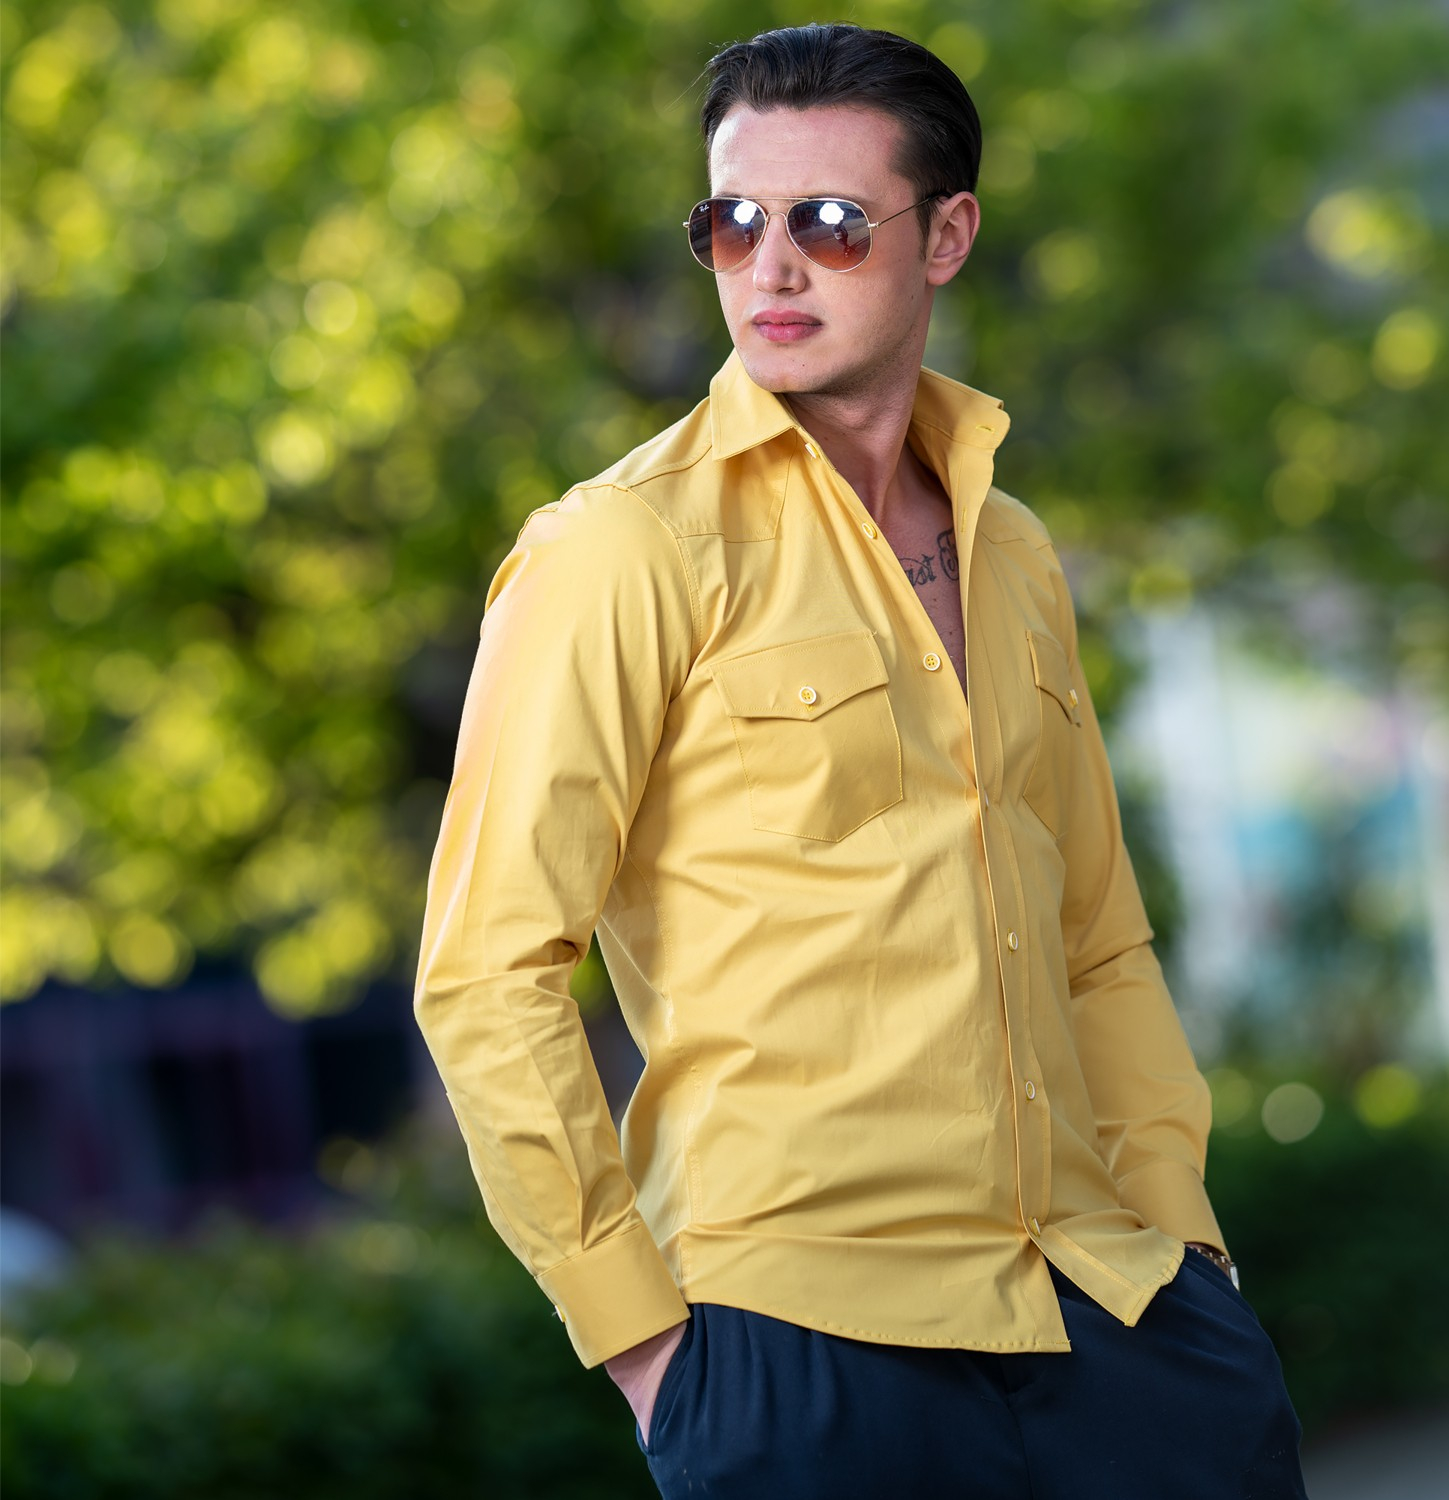 Эксклюзивная желтая солнечная рубашка Exve из хлопка и лайкры с двумя карманами на молнии в стиле западной рубашки с узким кроем для активного отдыха.